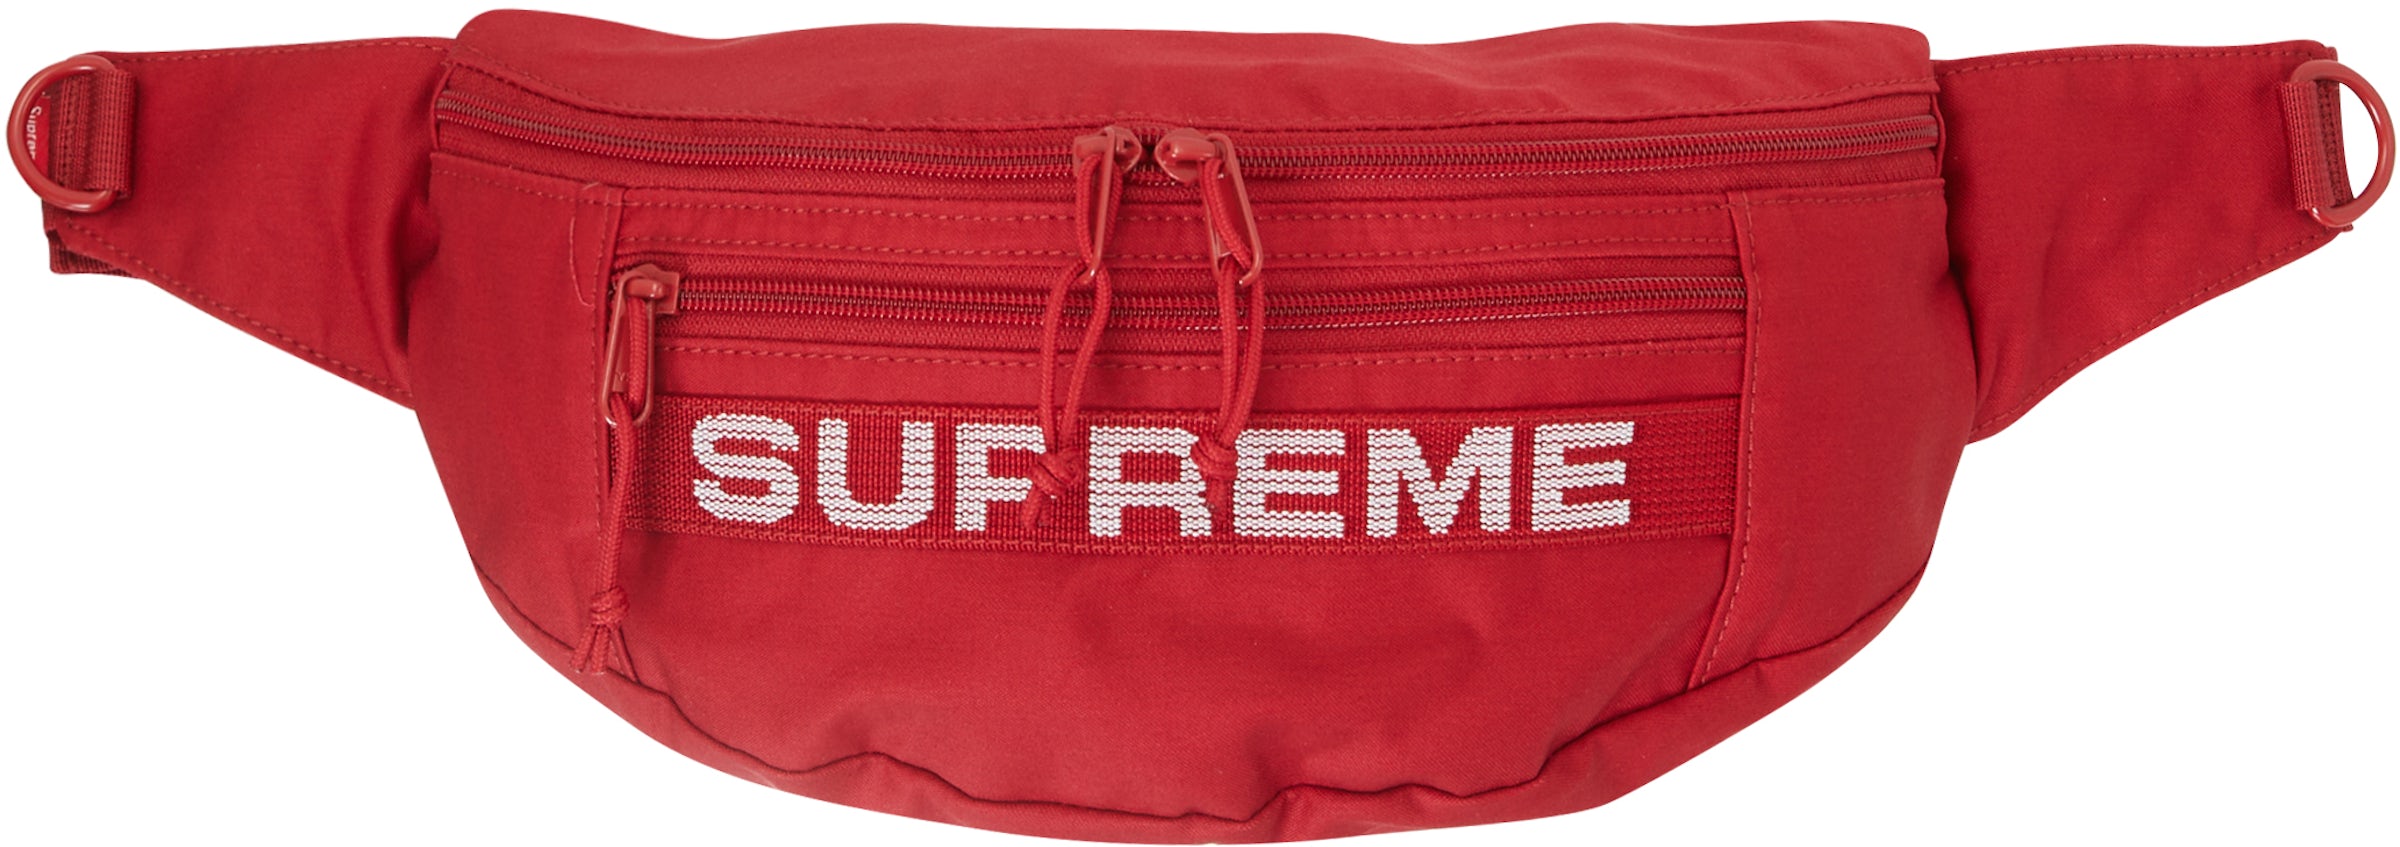 Supreme waist bag ss17 - Gem